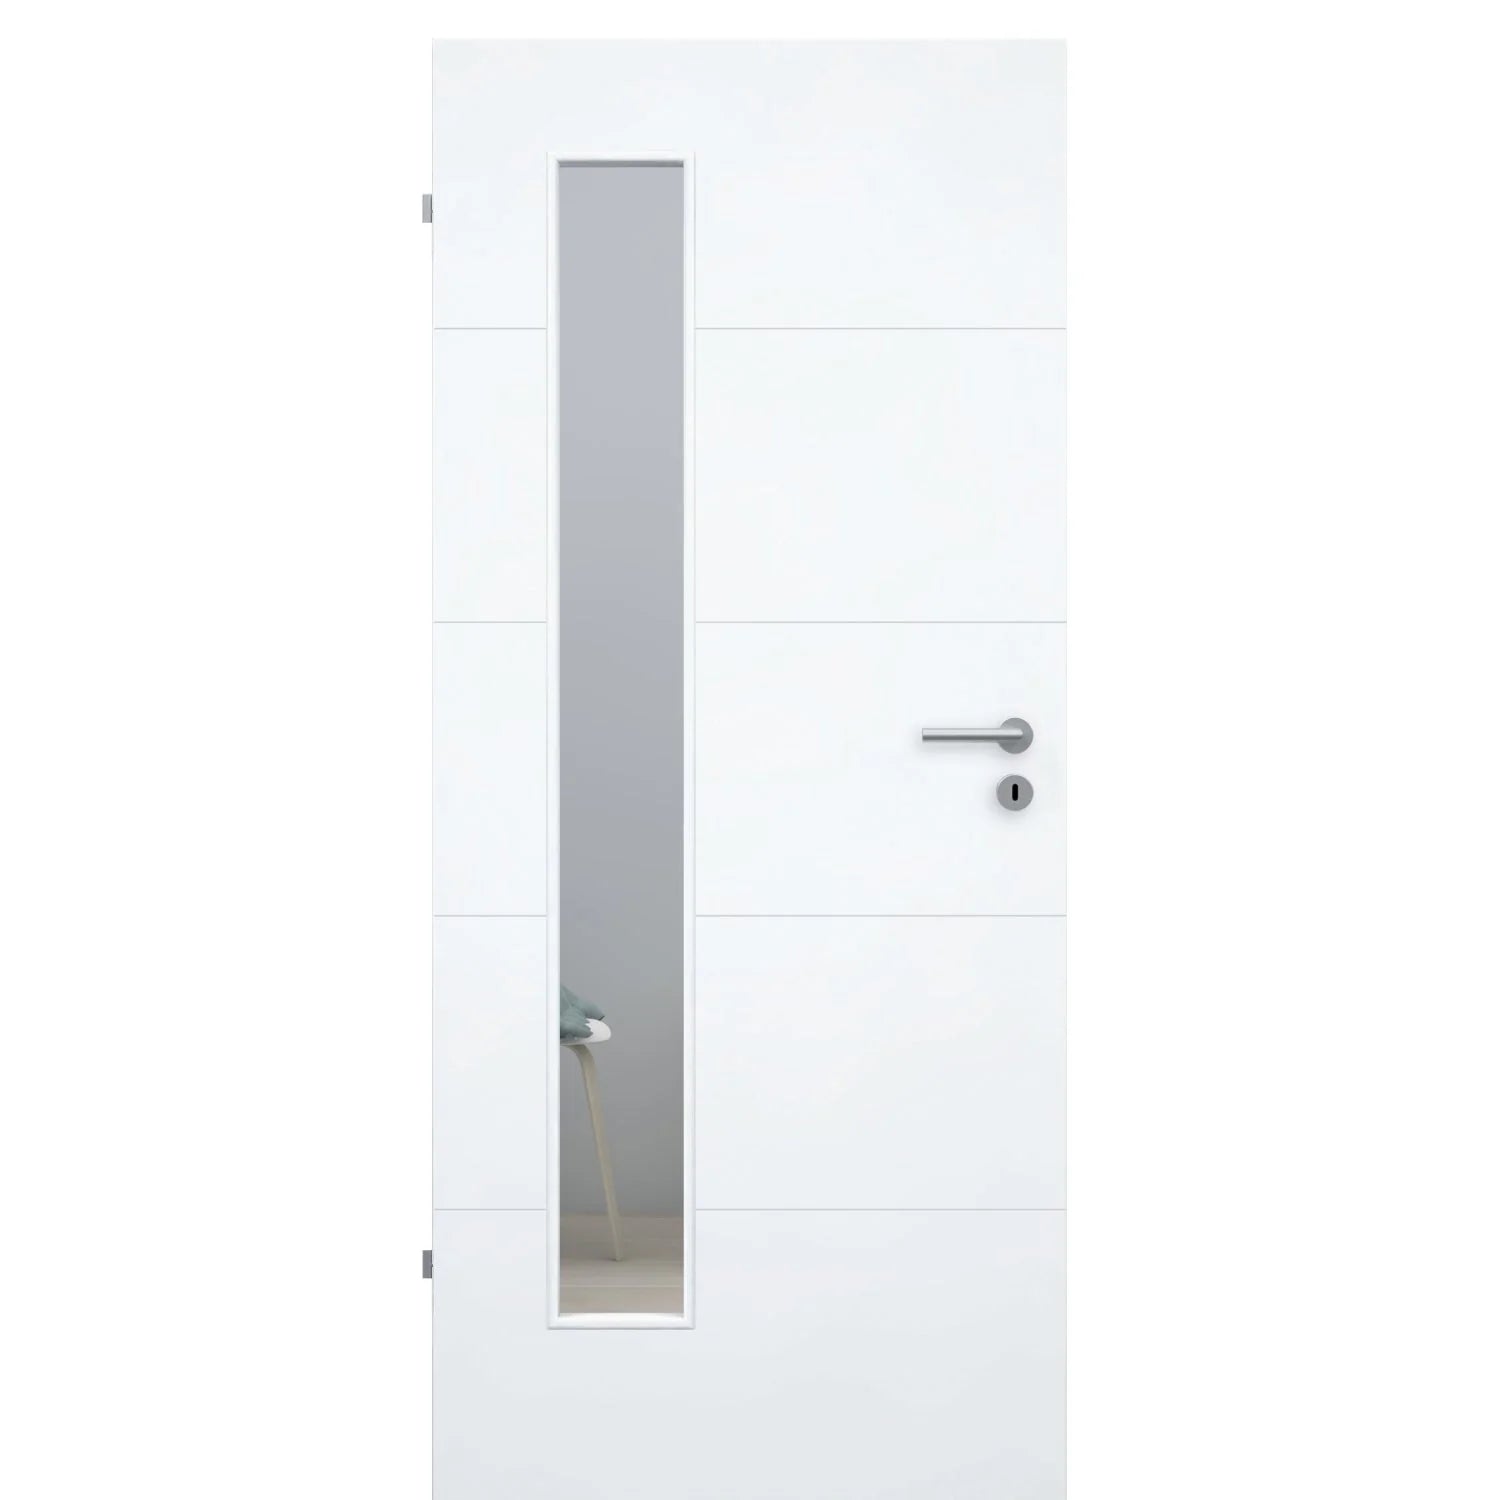 Zimmertür mit Lichtausschnitt brillant-weiß 4 Rillen Designkante - Modell Designtür Q43LAB